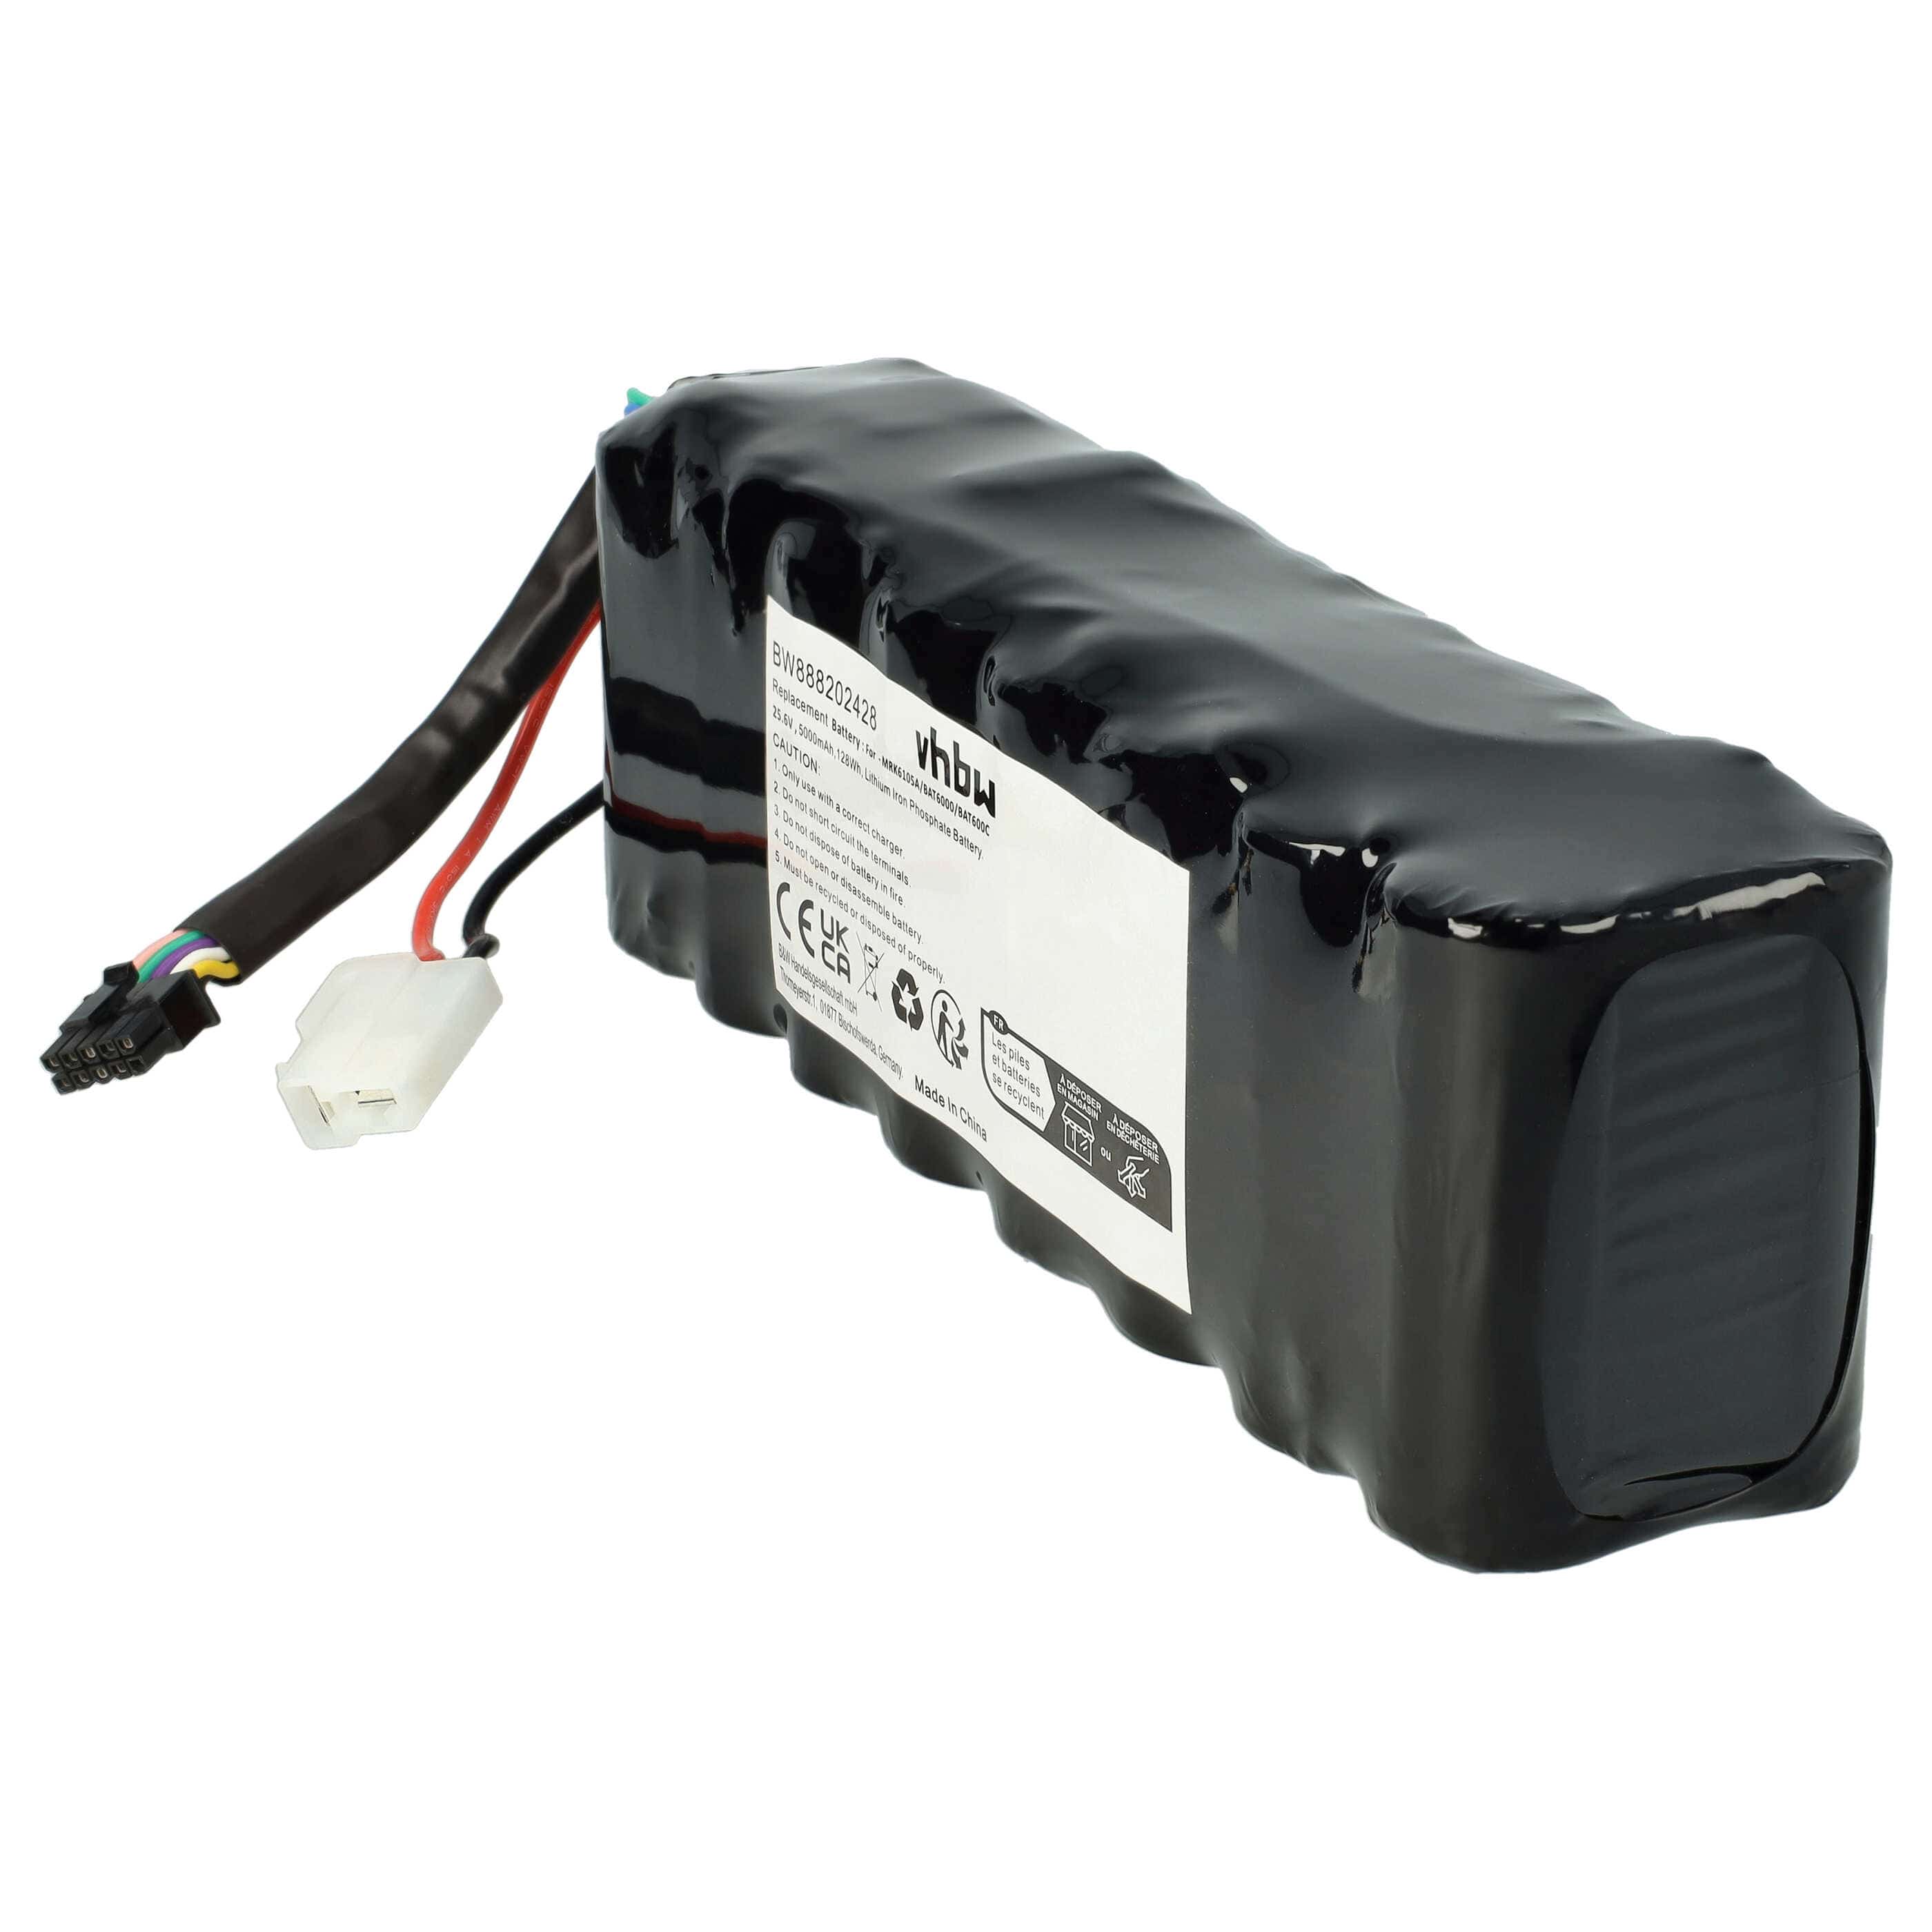 Akumulator do robota koszącego zamiennik Robomow MRK6105A - 5000 mAh 25,6 V LiFePO4, czarny